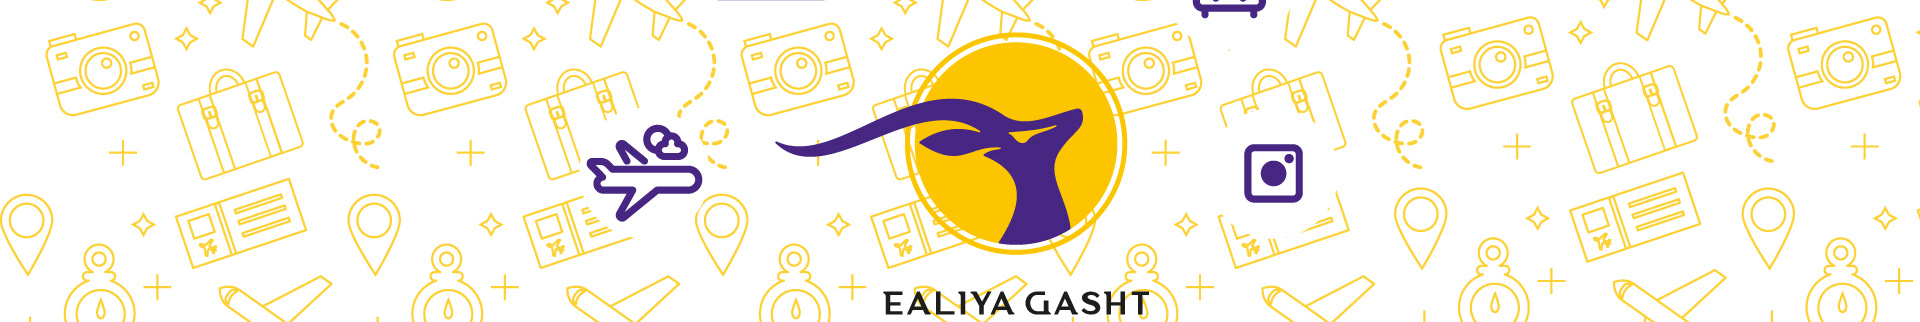 ealiya gasht's profile banner